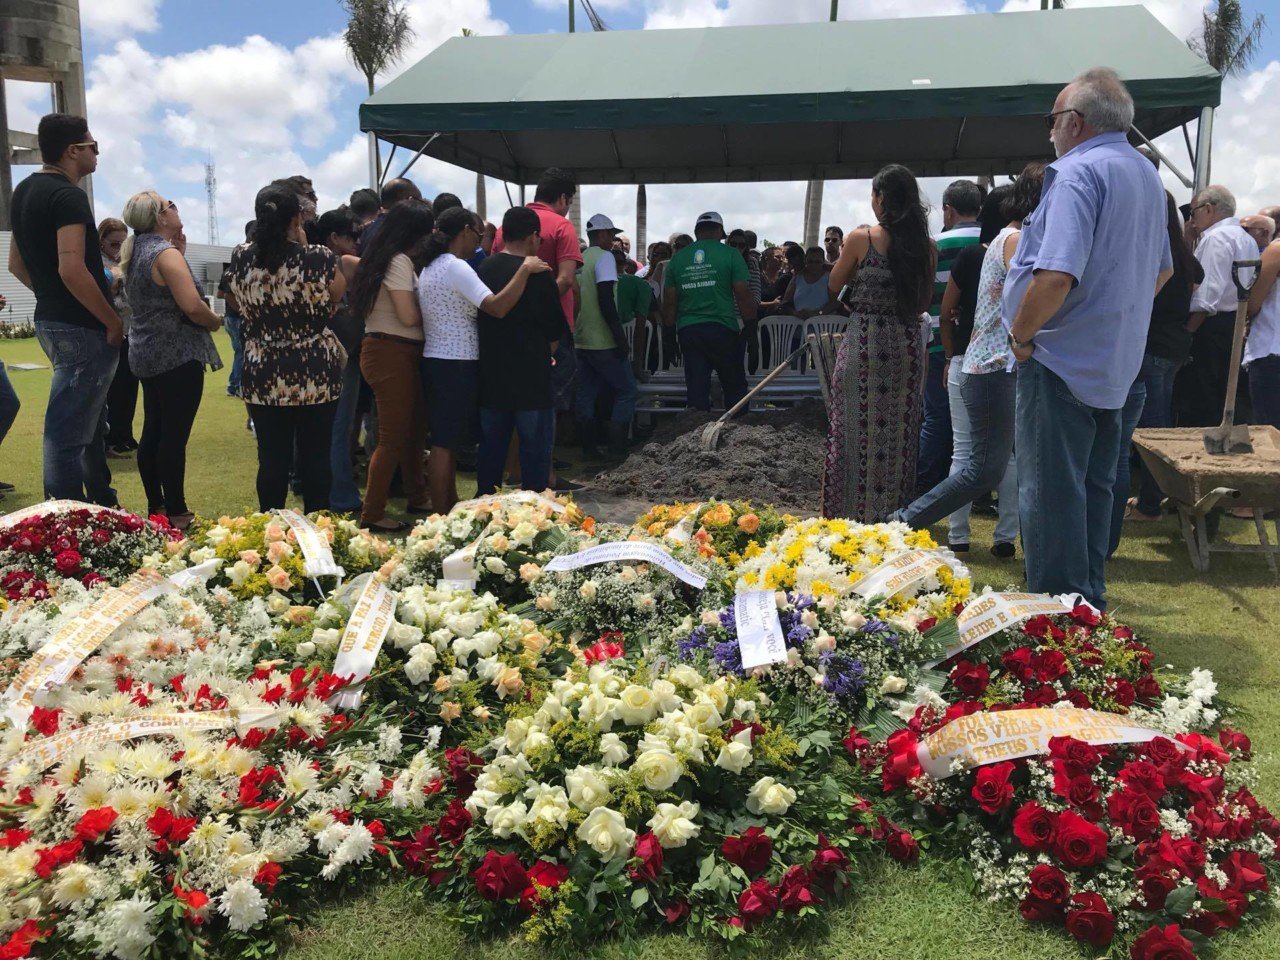 24008280 1637755886280571 606472287 o - VEJA VÍDEOS: Sócio de empresário assassinado diz durante sepultamento que 'gabinetes bacanas de Brasília' deixam população à mercê de bandidos